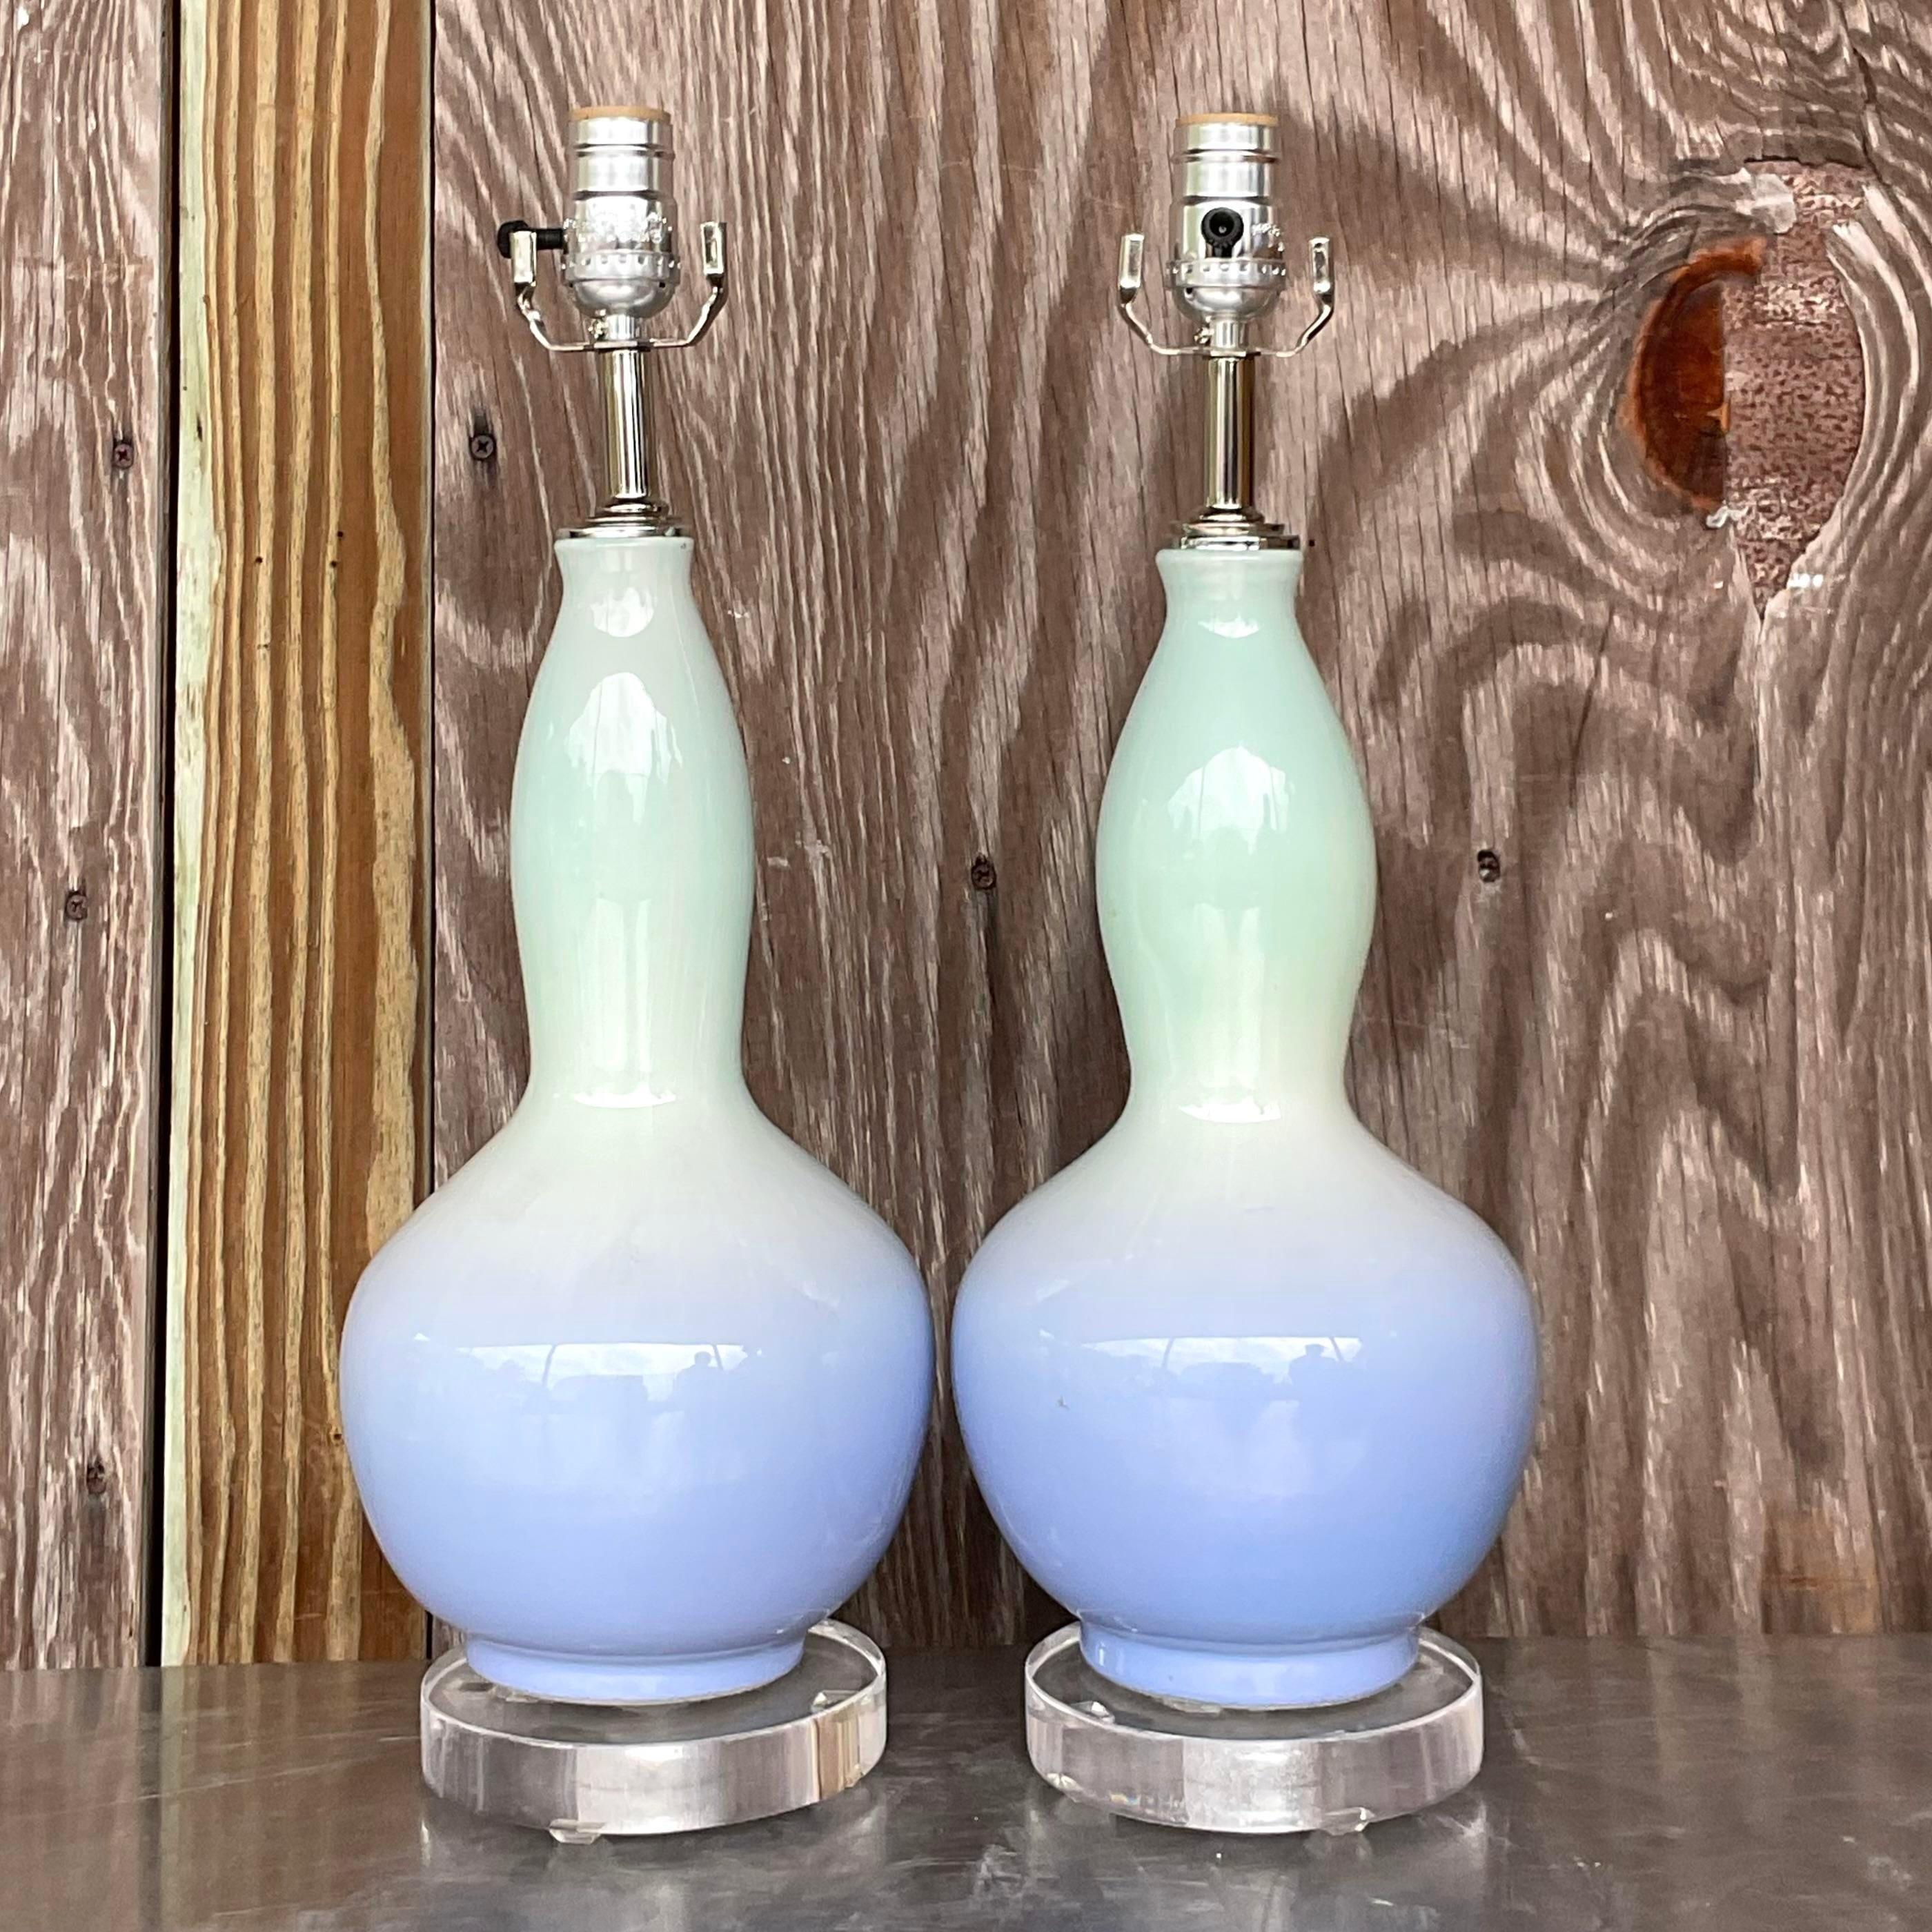 Regale Ausstrahlung: Vintage Regency Ombre Glaslampen - Ein Paar. Beleuchten Sie Ihren Raum mit amerikanischer Eleganz und zeitloser Raffinesse. Das exquisite Ombre-Glasdesign verleiht jedem Raum einen Hauch von königlichem Charme.